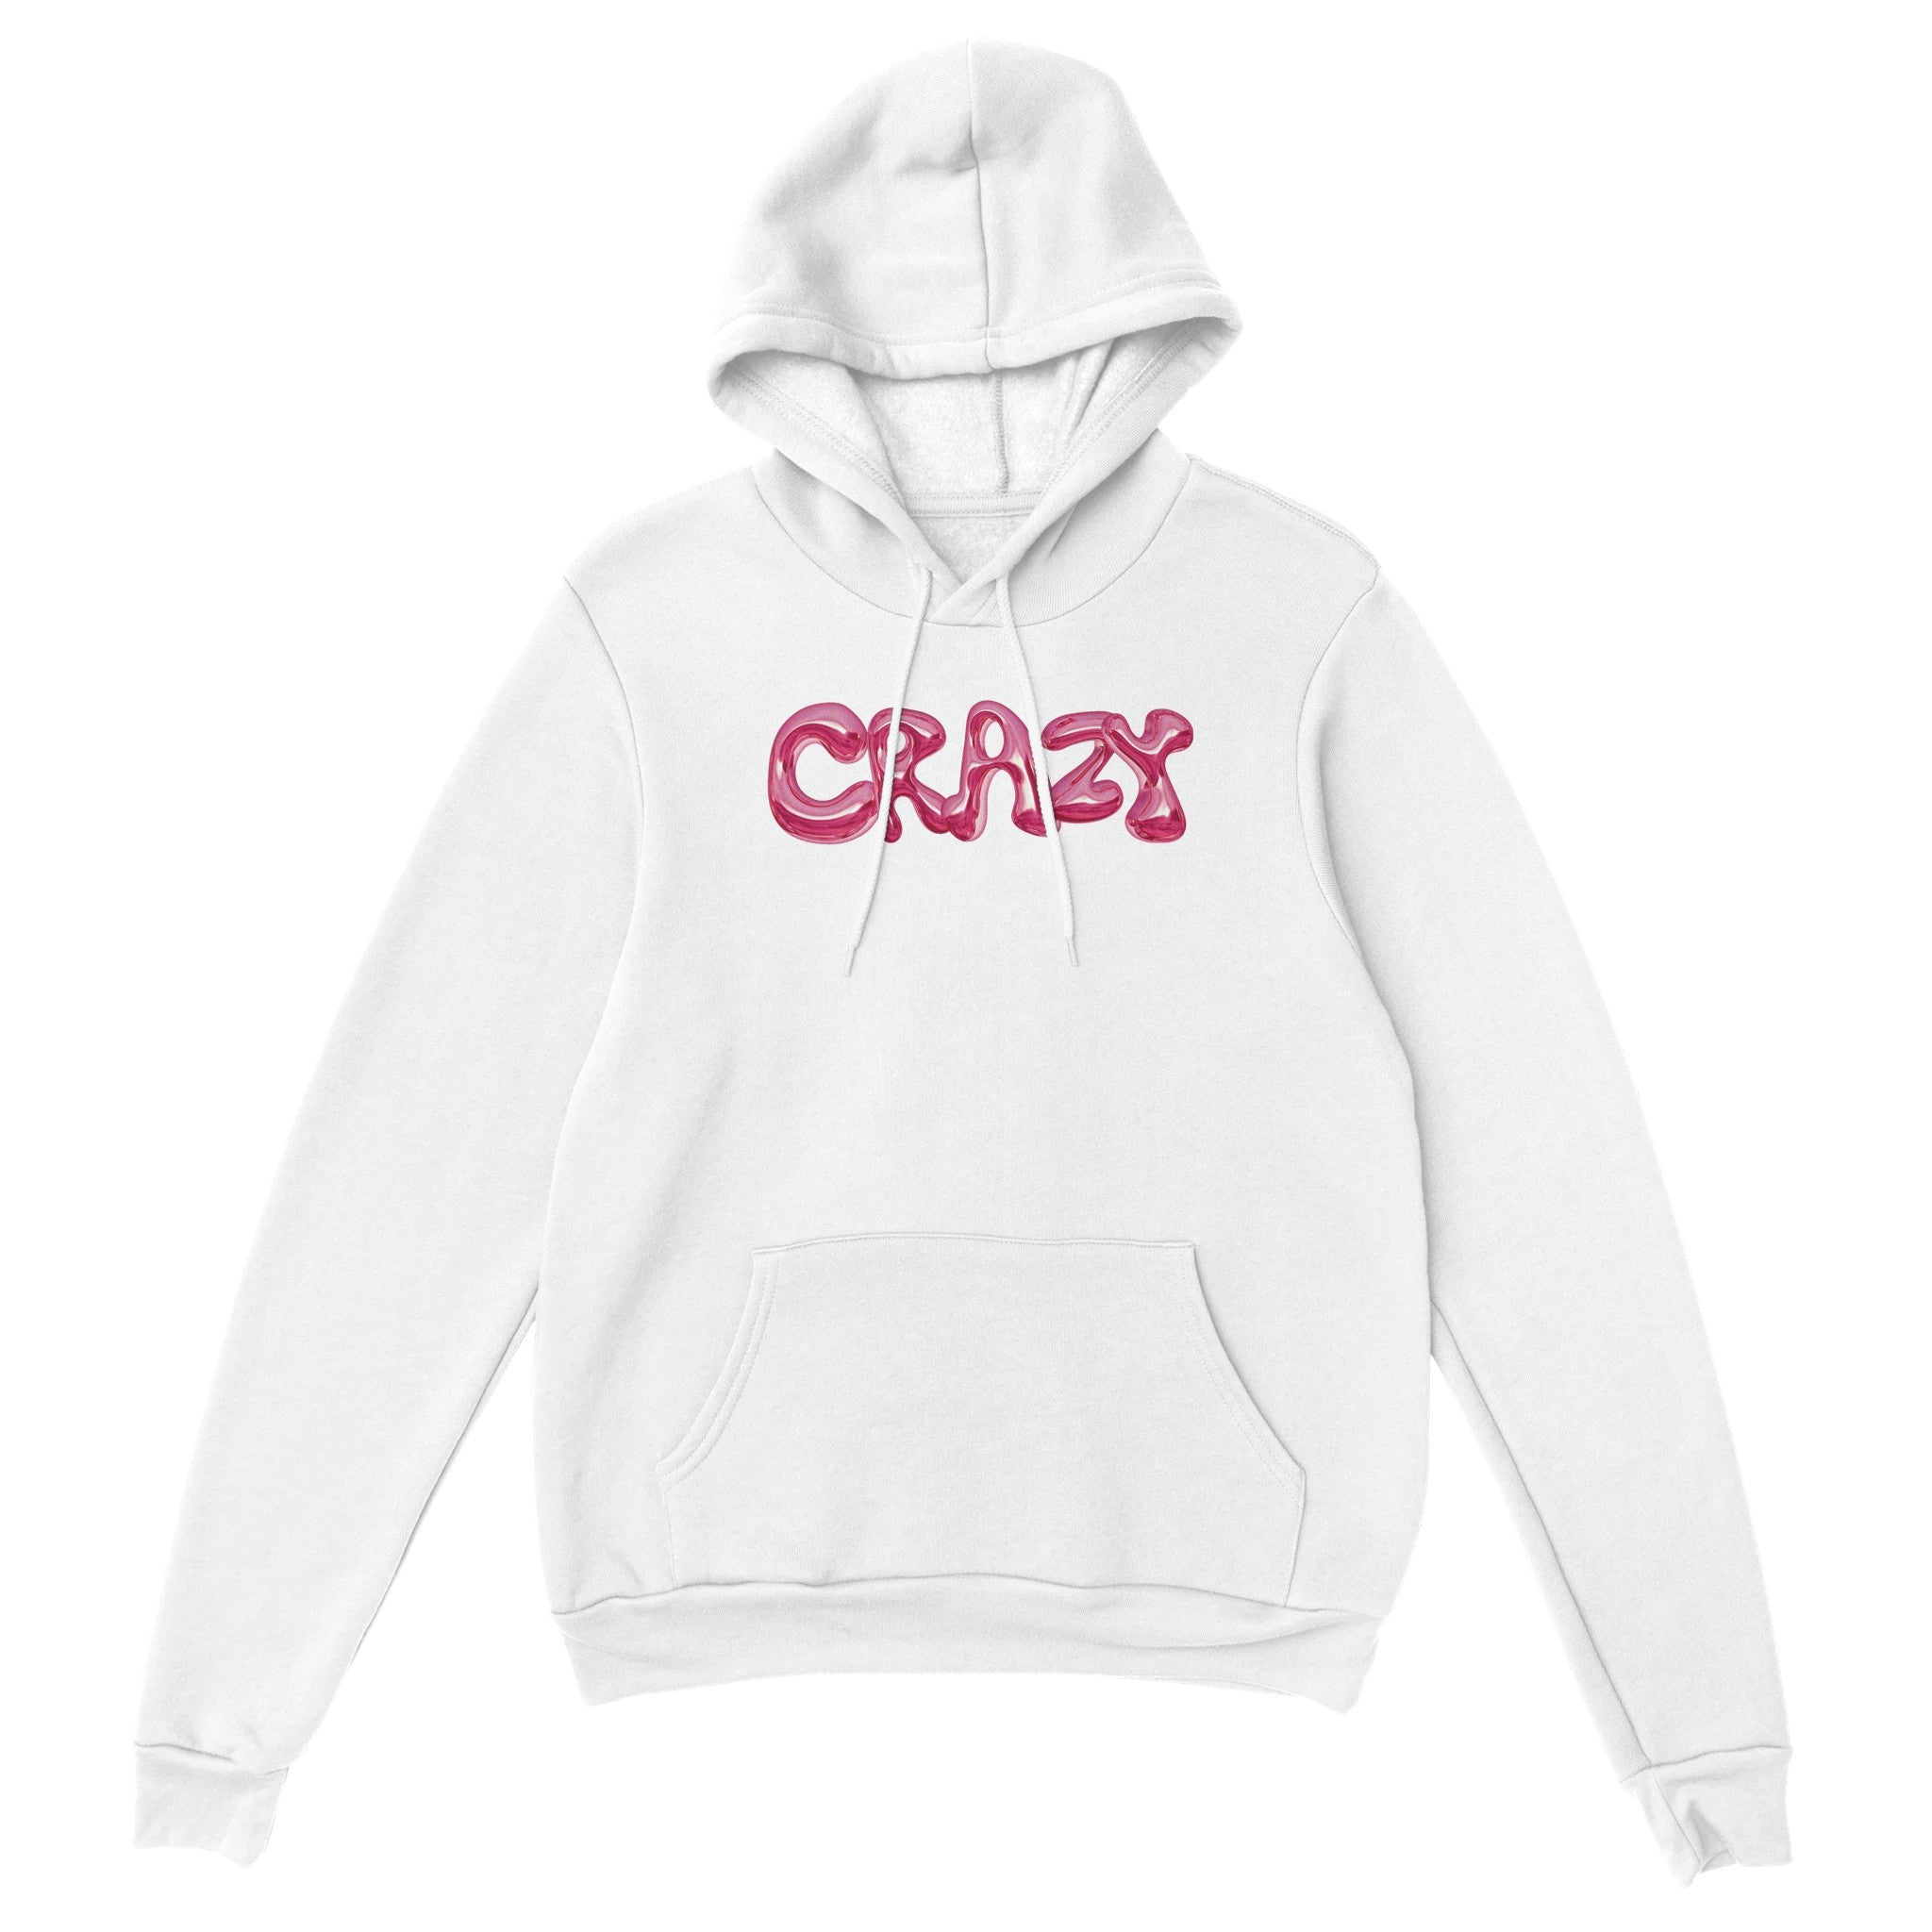 'Crazy' hoodie - In Print We Trust